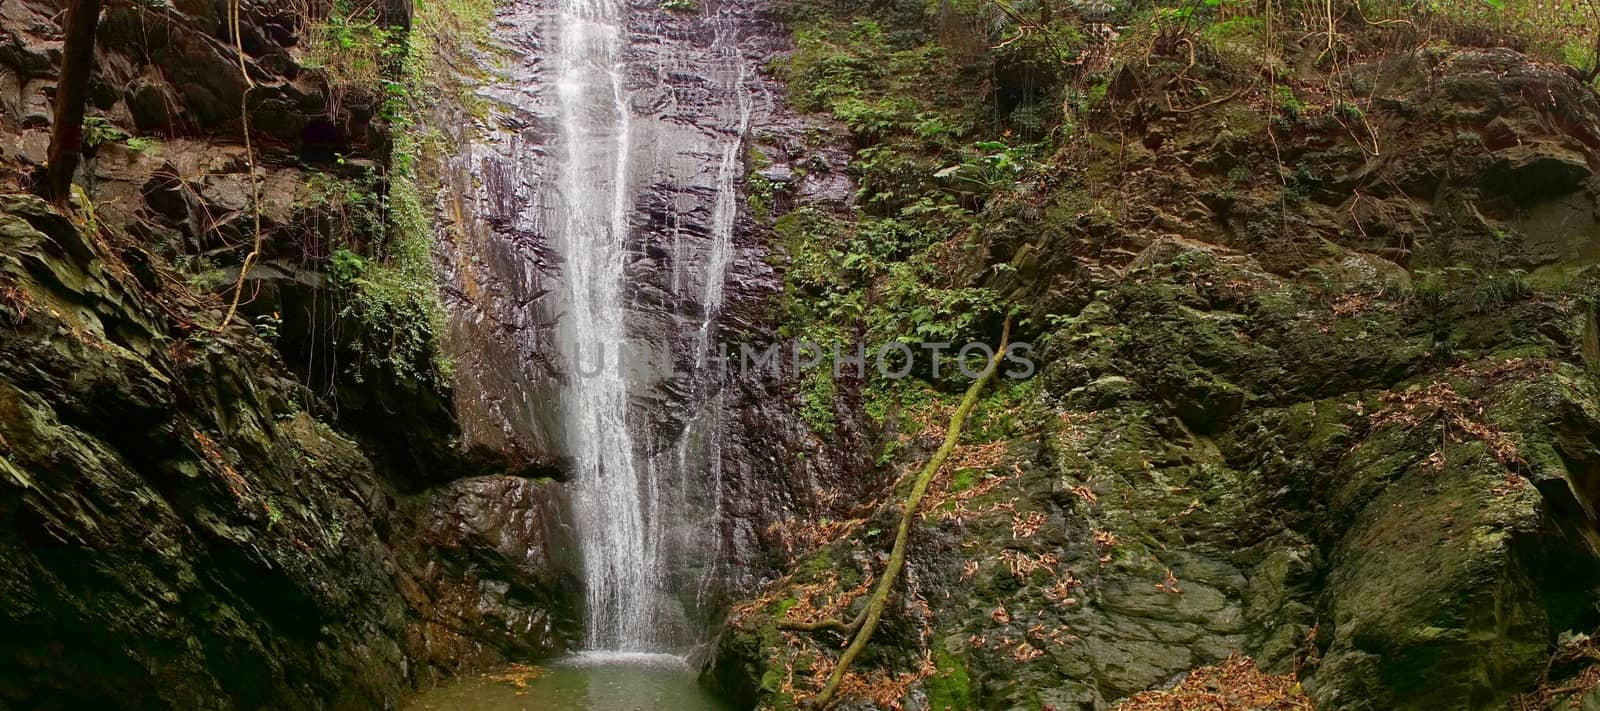 The rugged terrain of the Dajin waterfall in southern Taiwan
